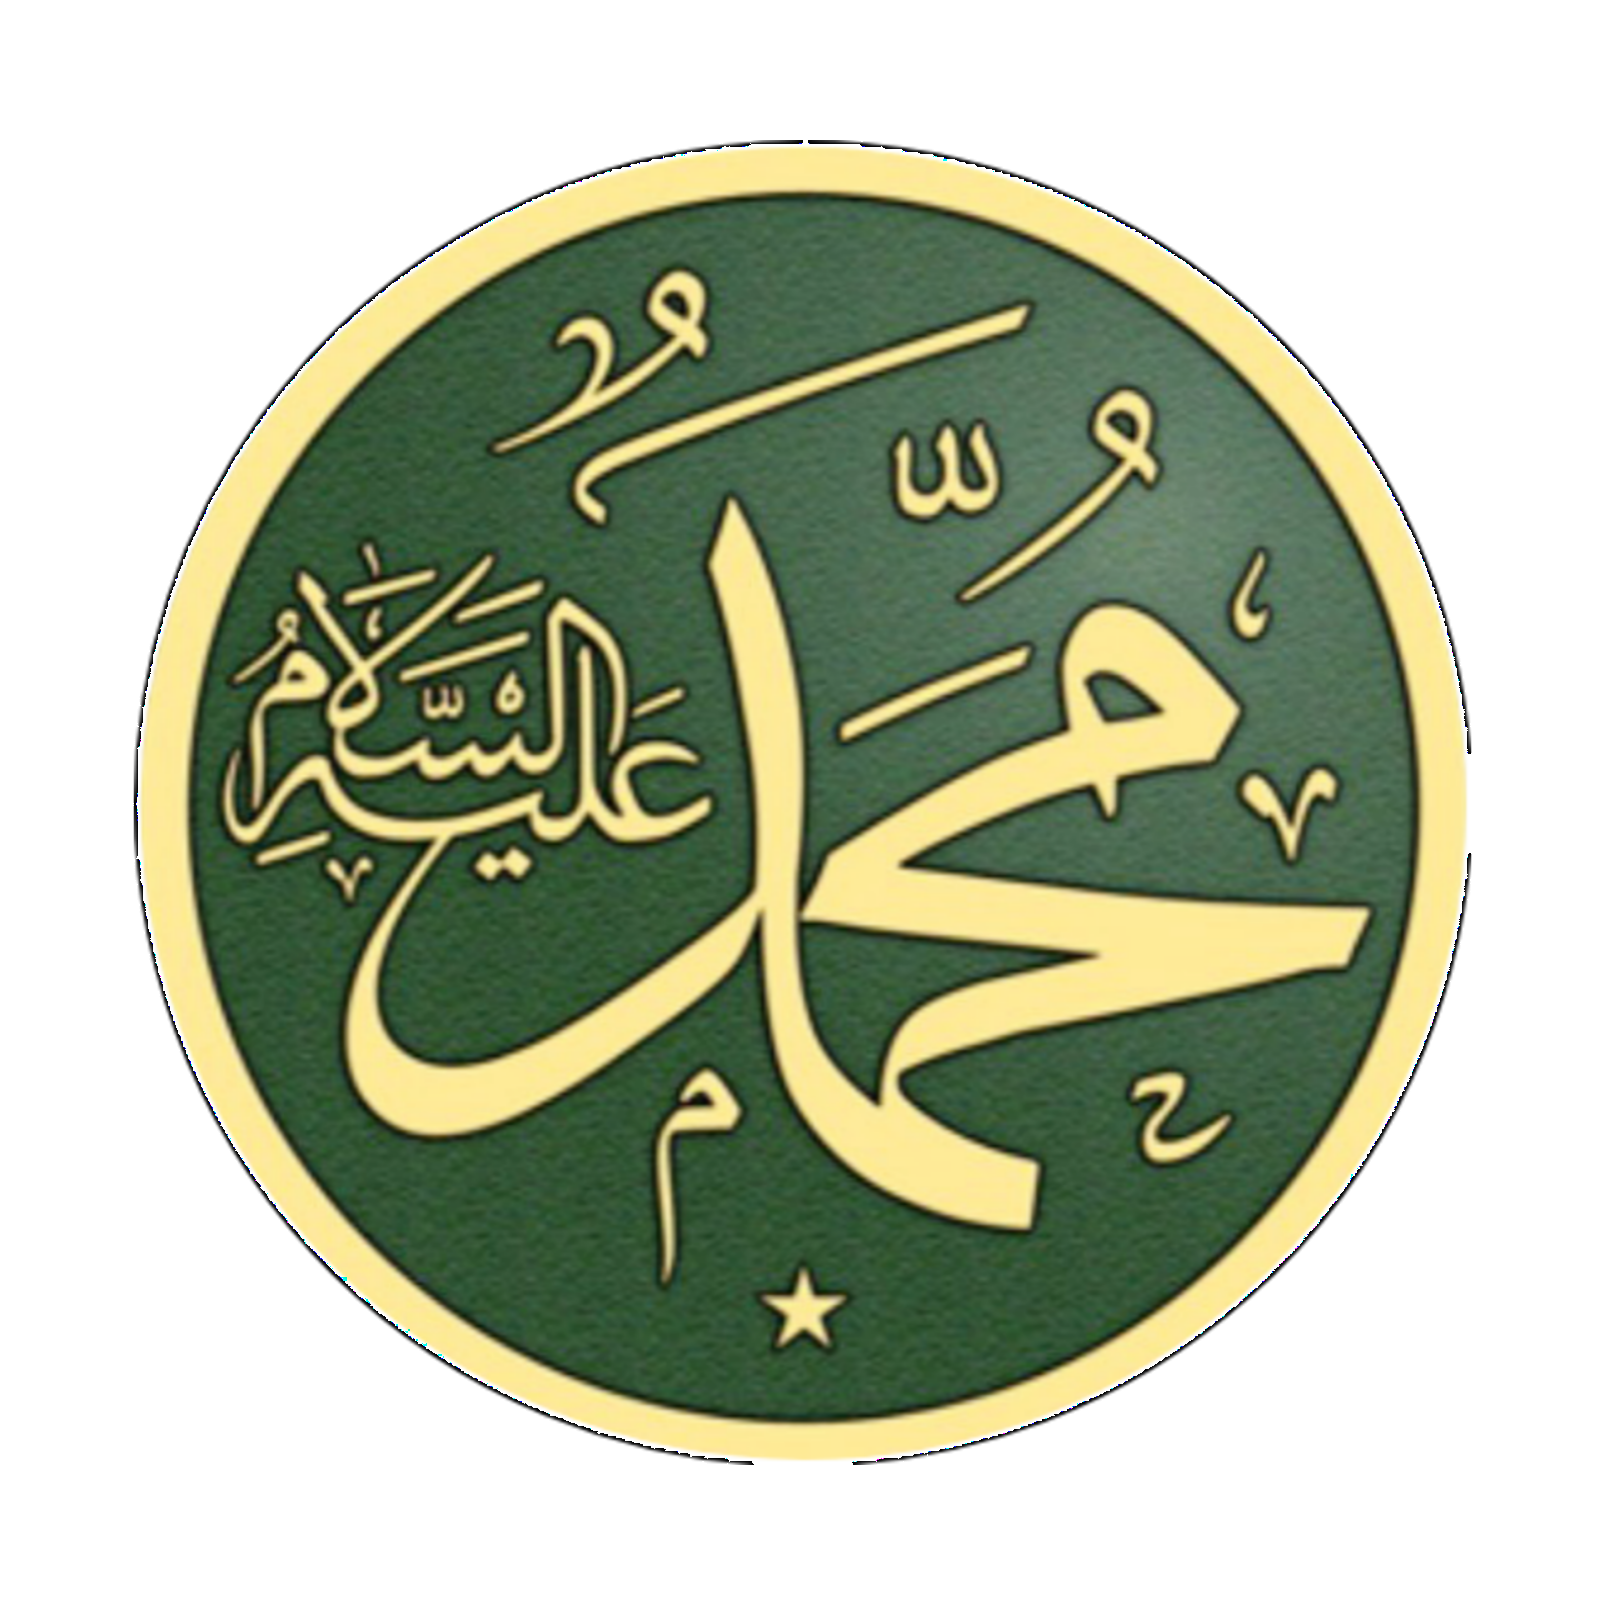 Имя пророка Мухаммеда на арабском. Пророк Мухаммад на арабском. Мусульманские символы. Имя пророка Мухаммеда.